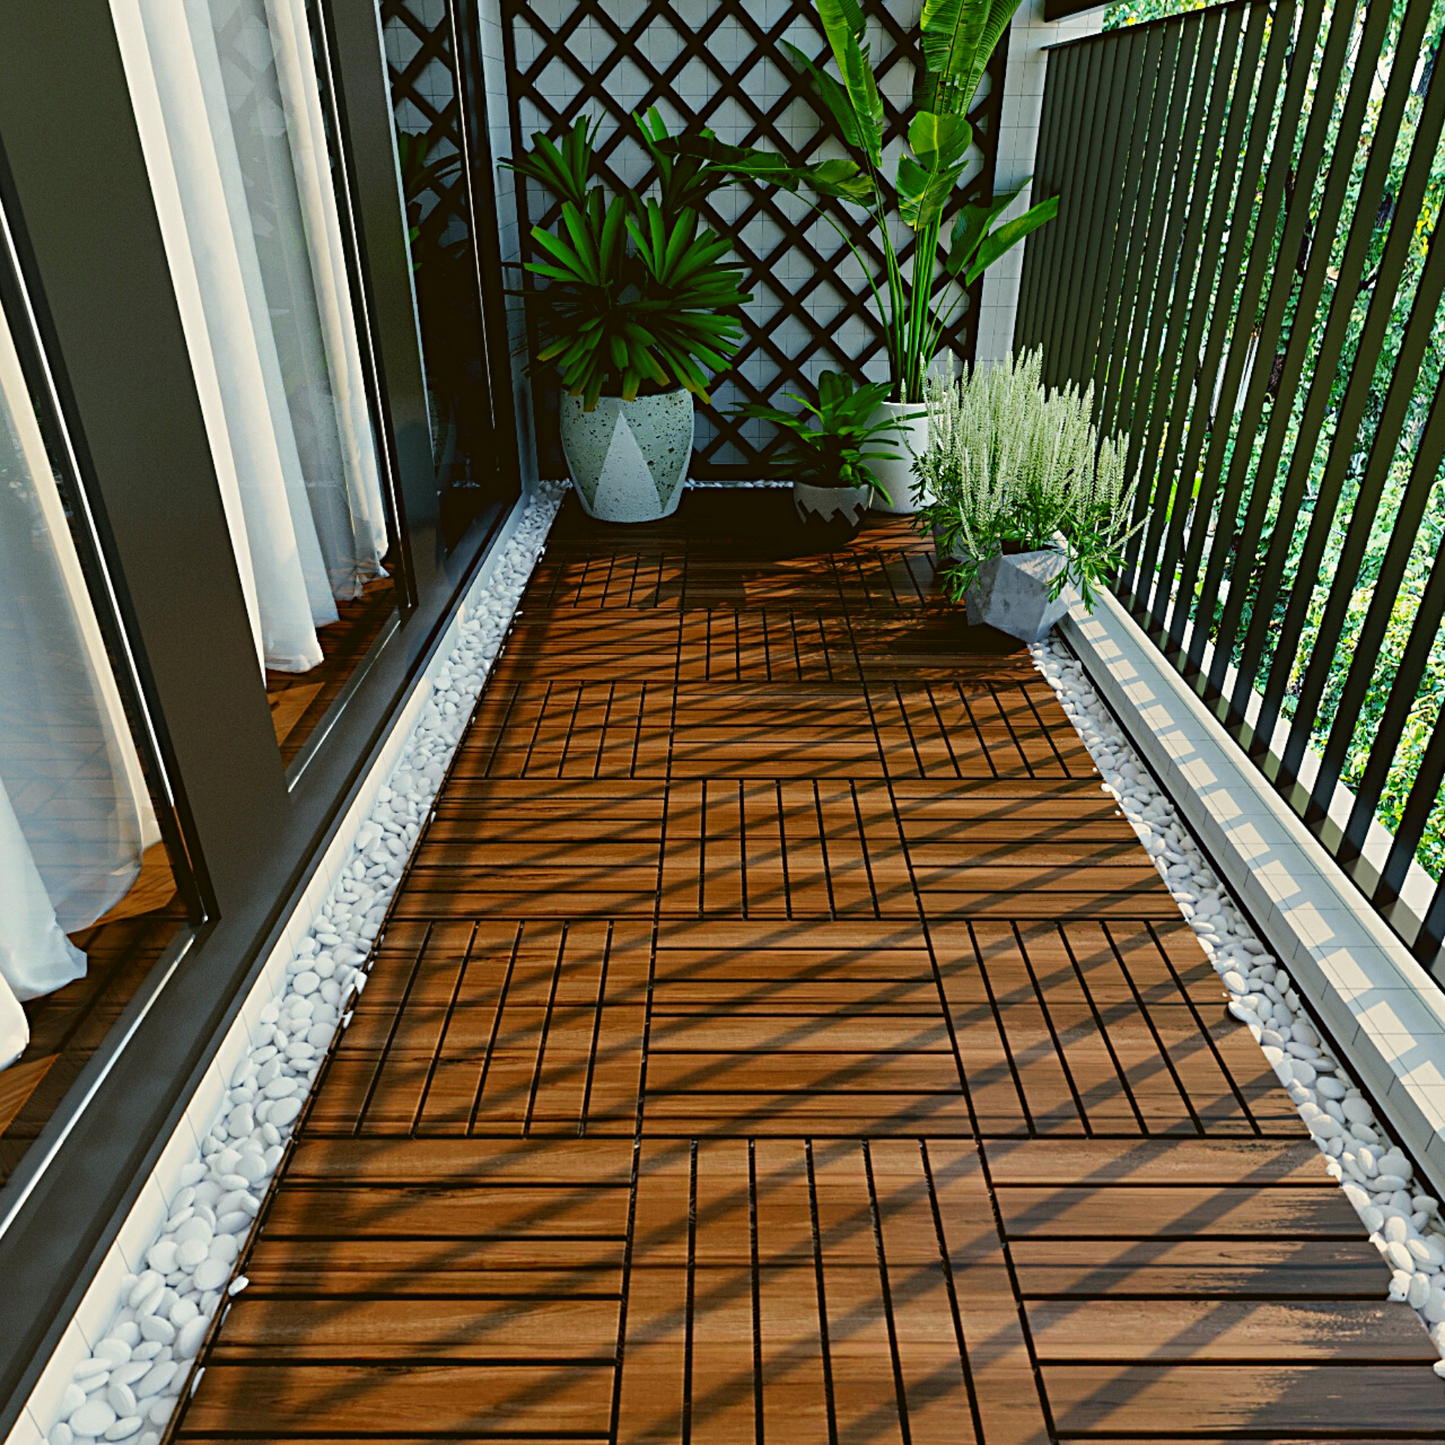 BTMWAY 12''x12'' Wood Interlocking Flooring Tiles Indoor & Outdoor for Patio Garden Deck Poolside Balcony Backyard, Pack of 10, Natural